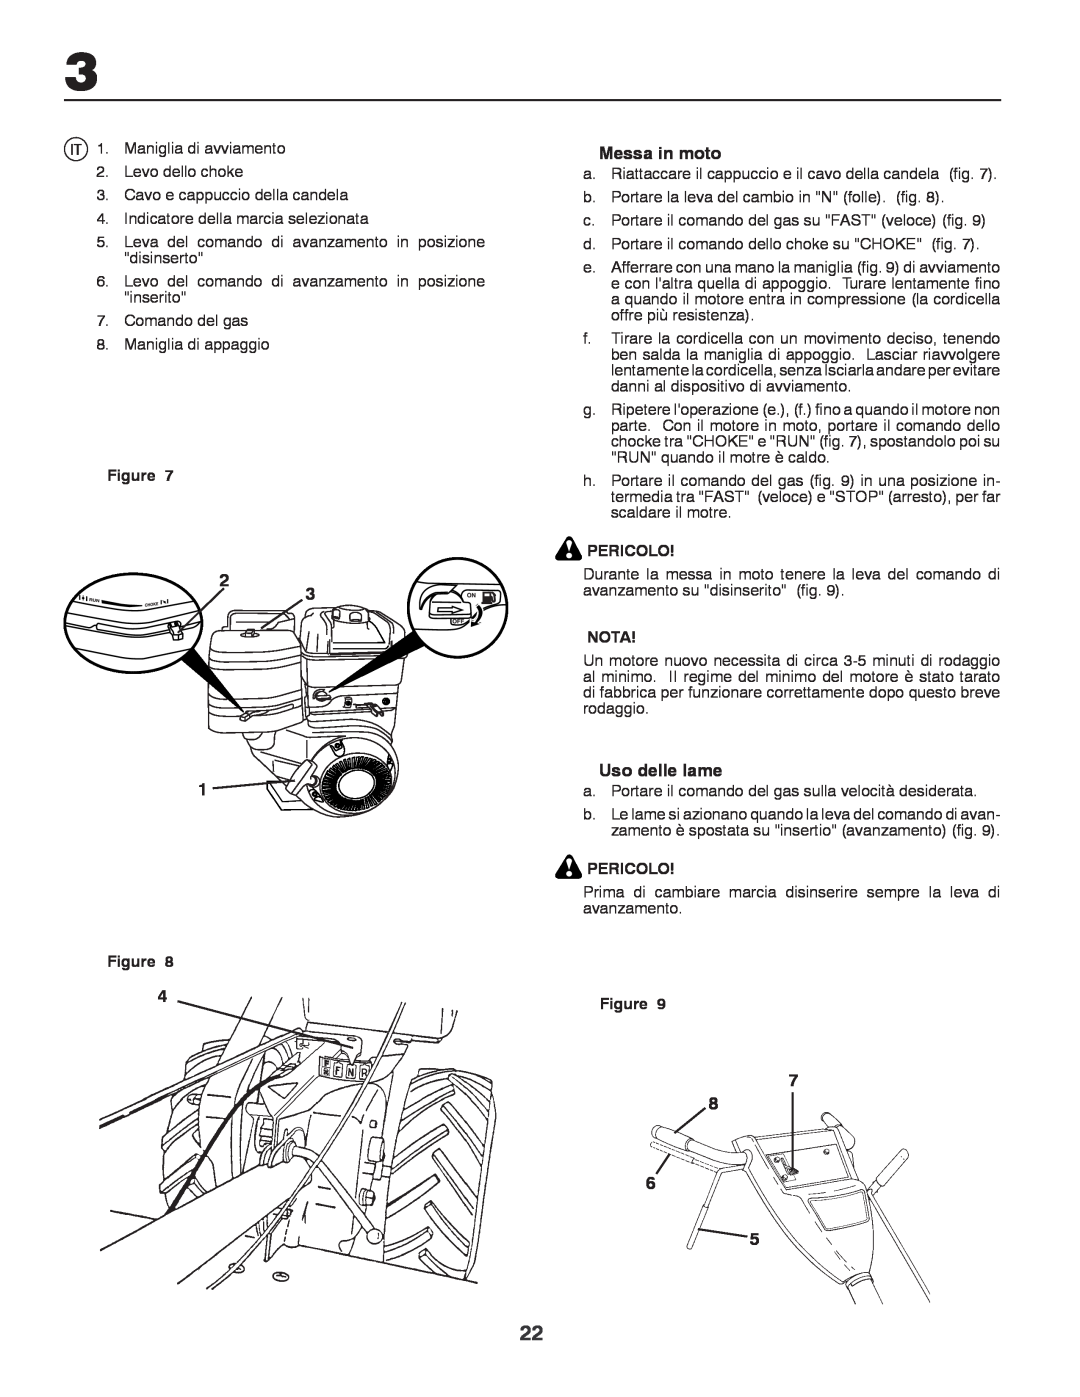 Husqvarna CRT81 instruction manual Messa in moto, Uso delle lame, Pericolo, Nota 